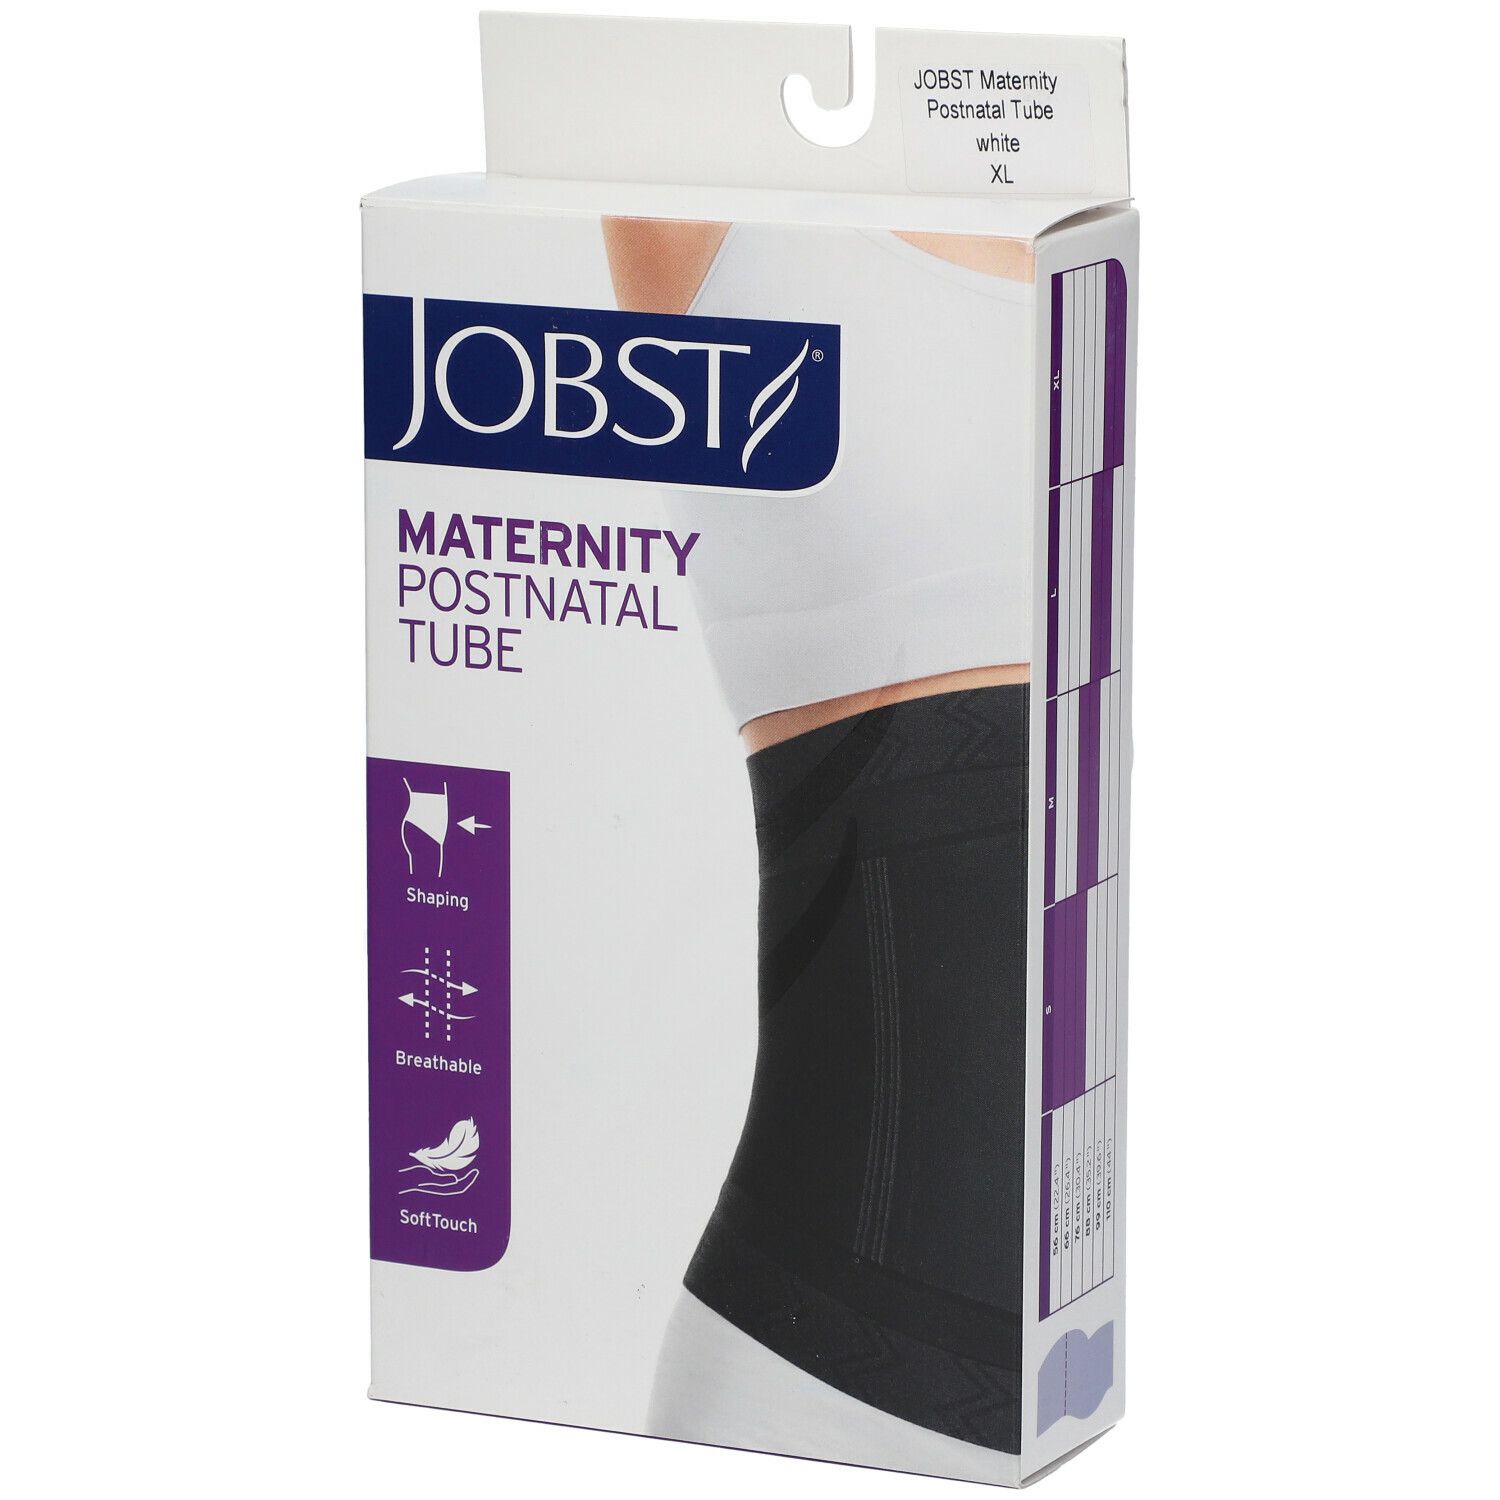 JOBST® Maternity Postnatal Tube XL White